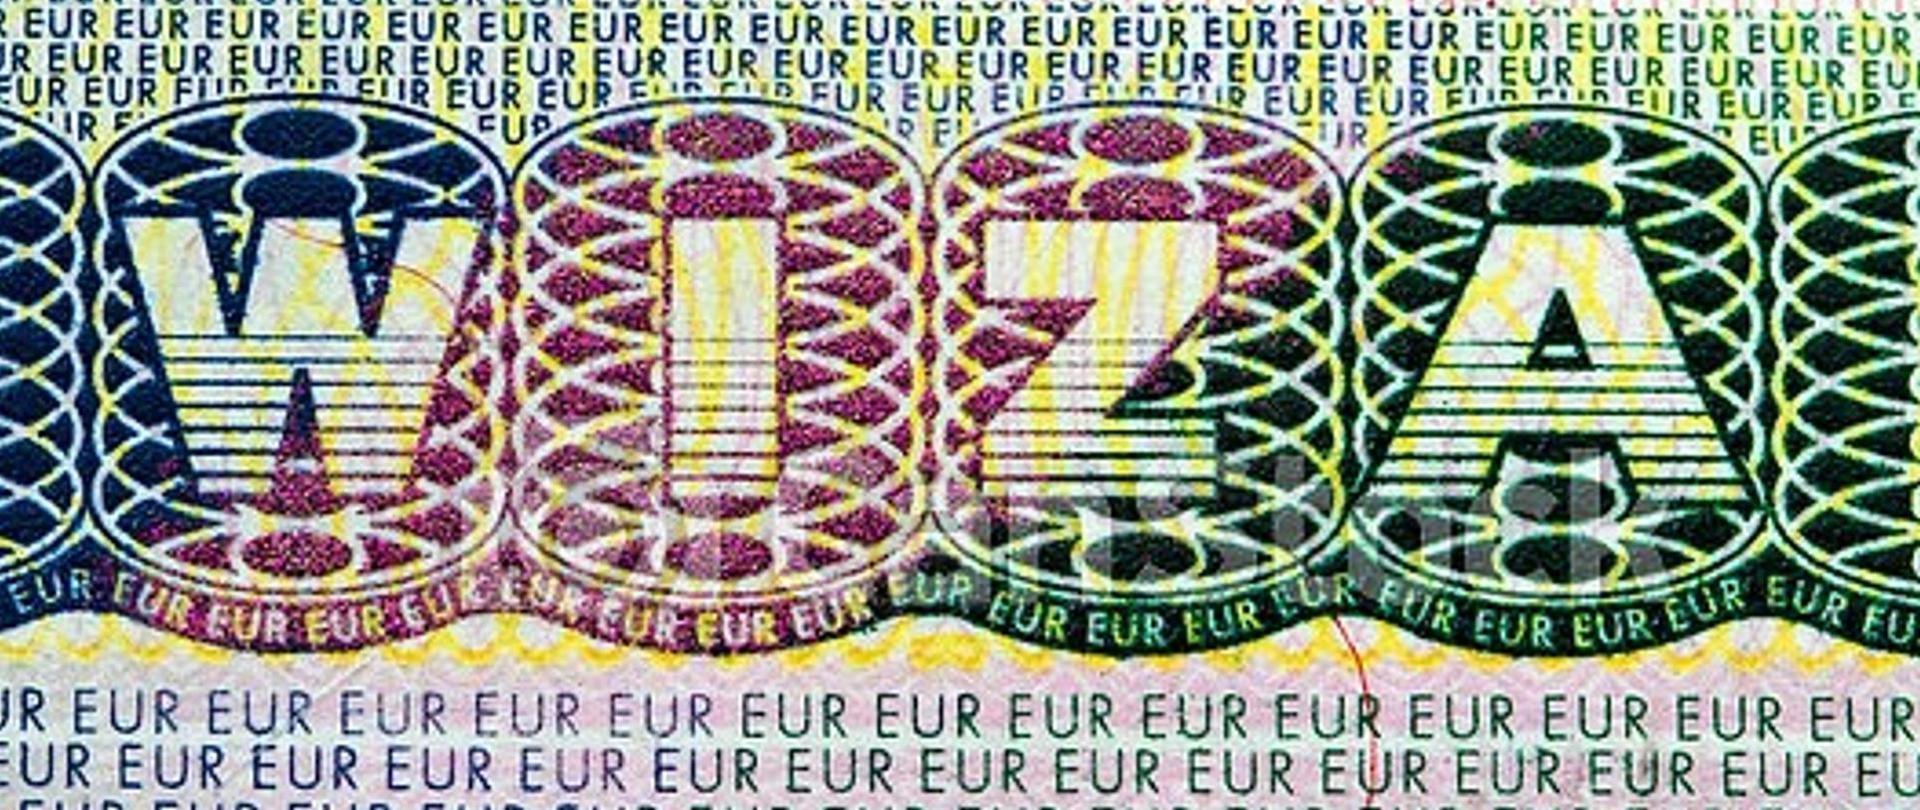 Opłata ta od 1 czerwca br. będzie wynosić 135 euro.
Bez zmian pozostaje stawka opłaty za rozpatrzenie wniosku o wydanie wizy Schengen (typu C) i przyjęcie i rozpatrzenie wniosku o ponowne rozpatrzenie wniosku o wydanie wizy Schengen.
